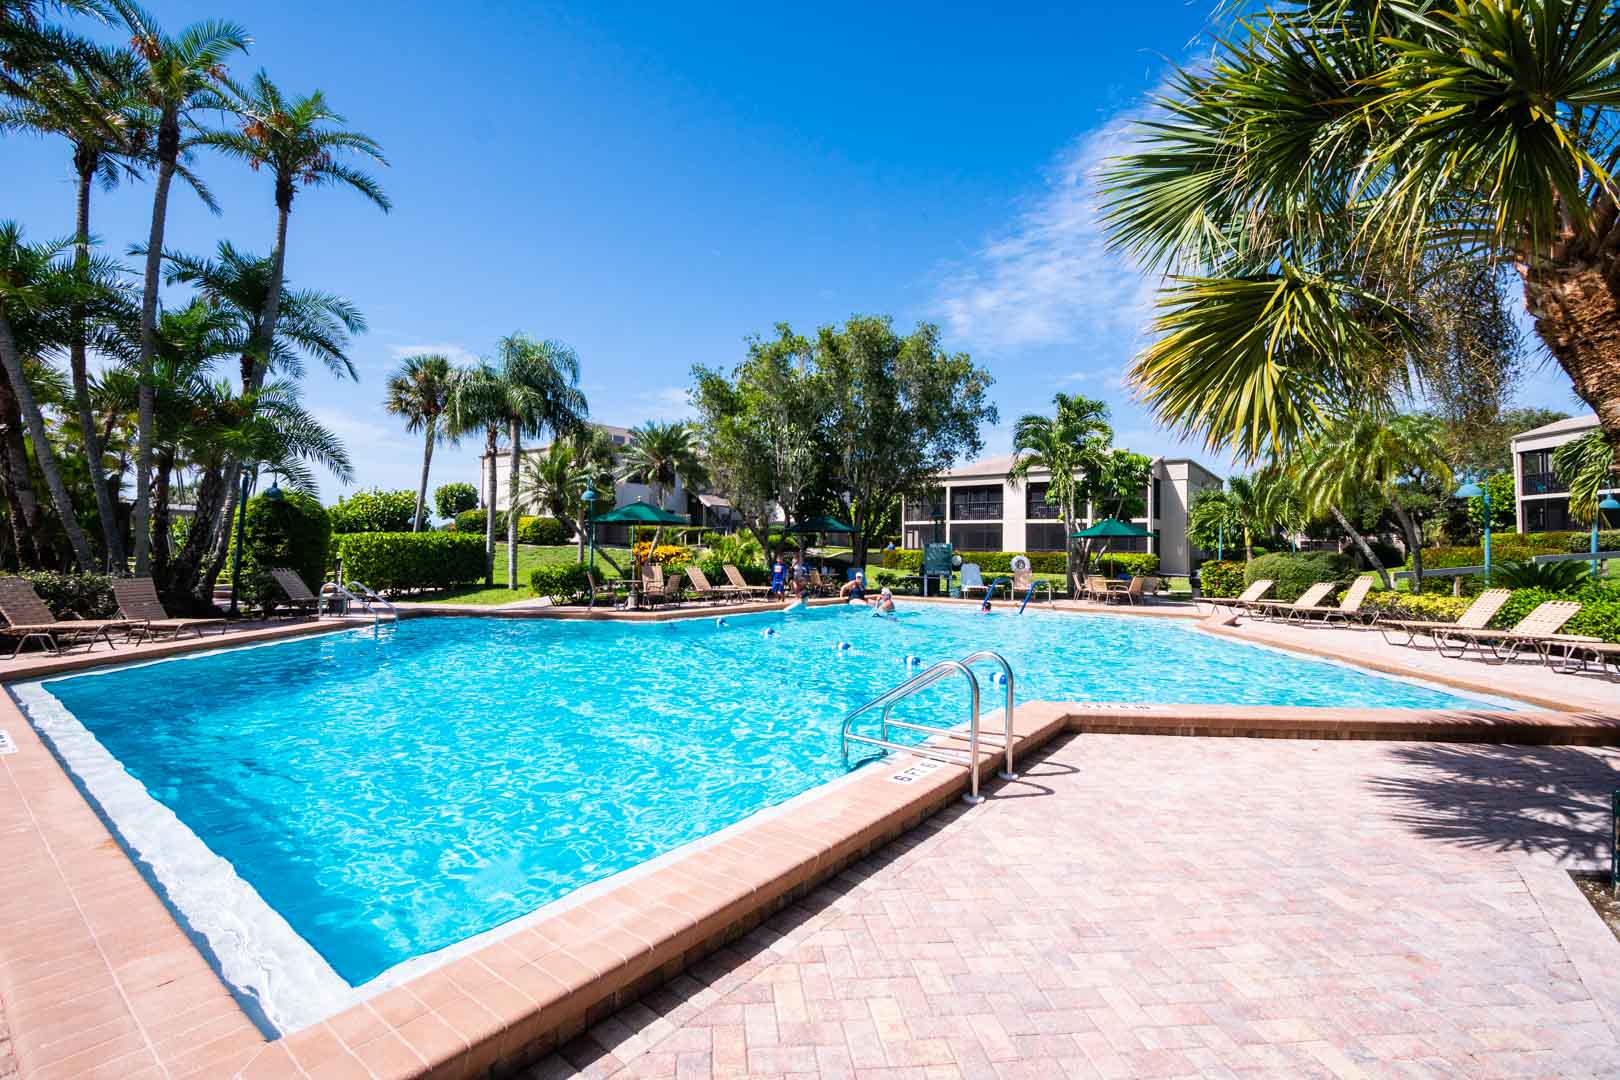 A crisp and clean outdoor swimming pool at VRI's Sanibel Beach Club in Sanibel Island, Florida.